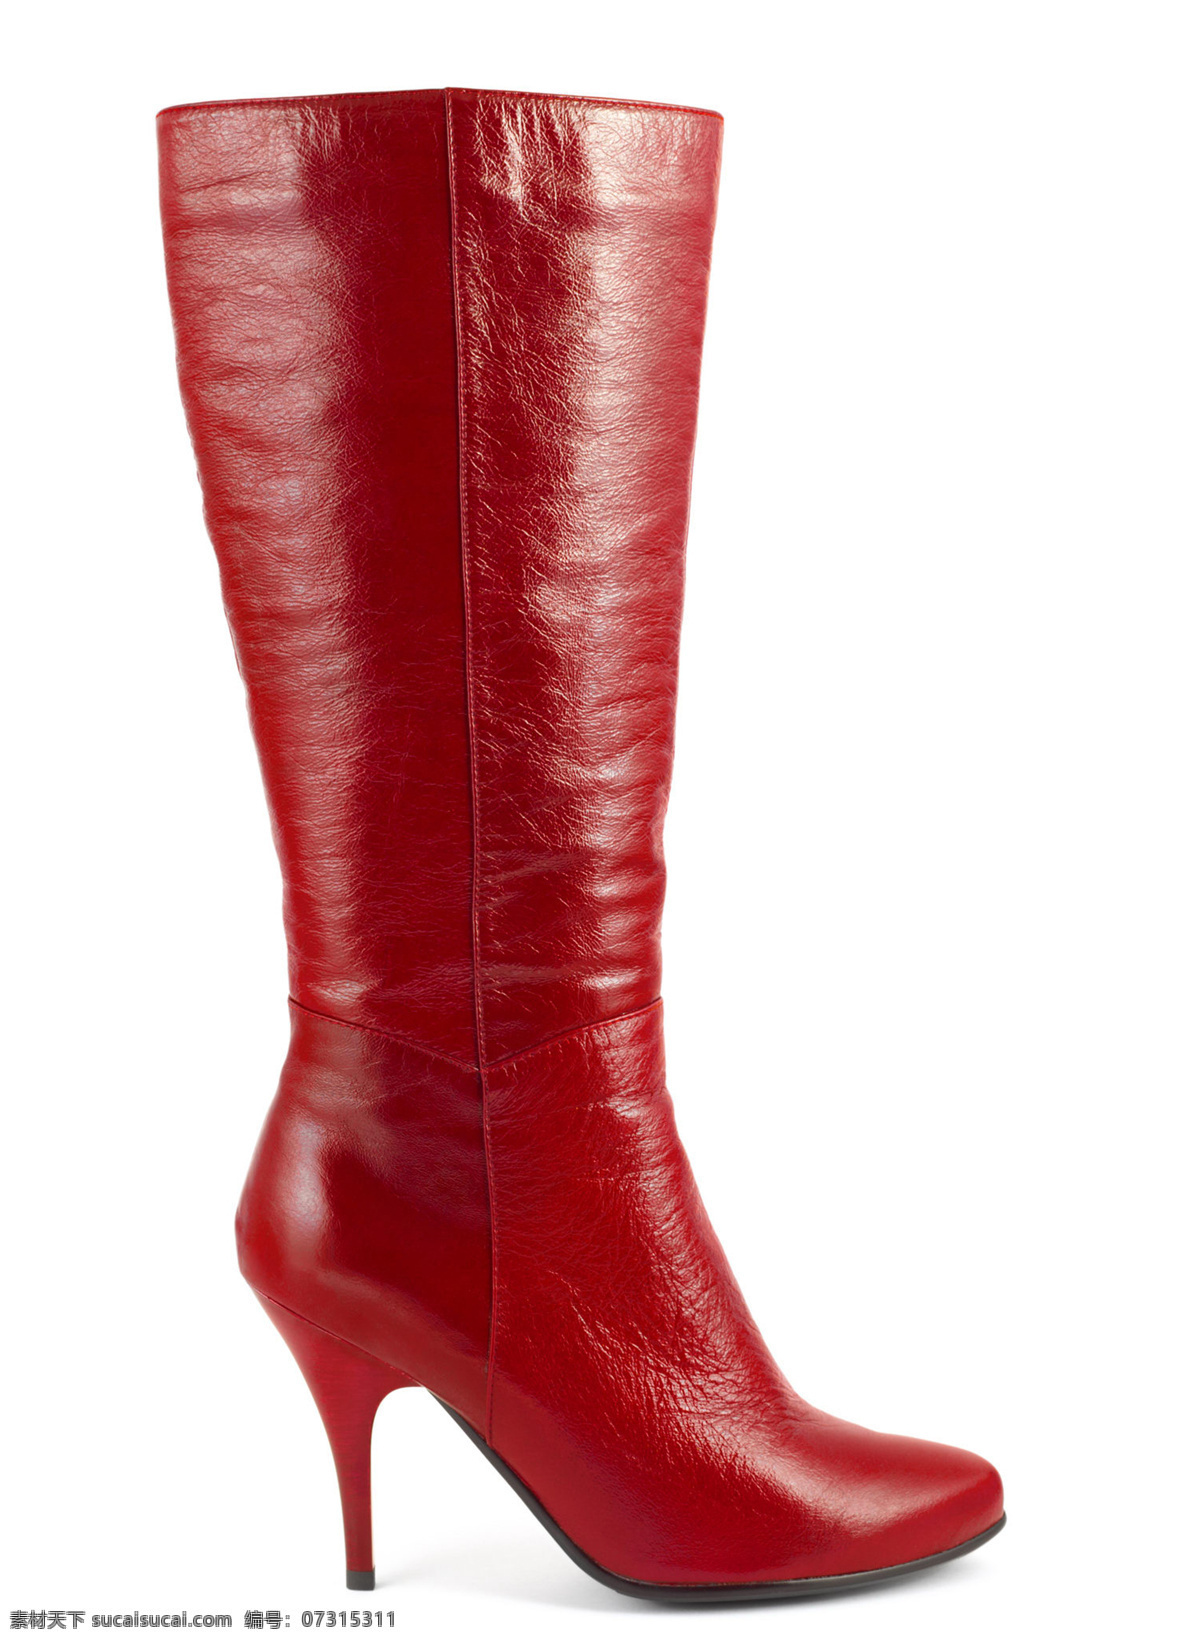 红色 皮靴 女鞋 高跟鞋 女性鞋子 鞋子摄影 红色皮靴 珠宝服饰 生活百科